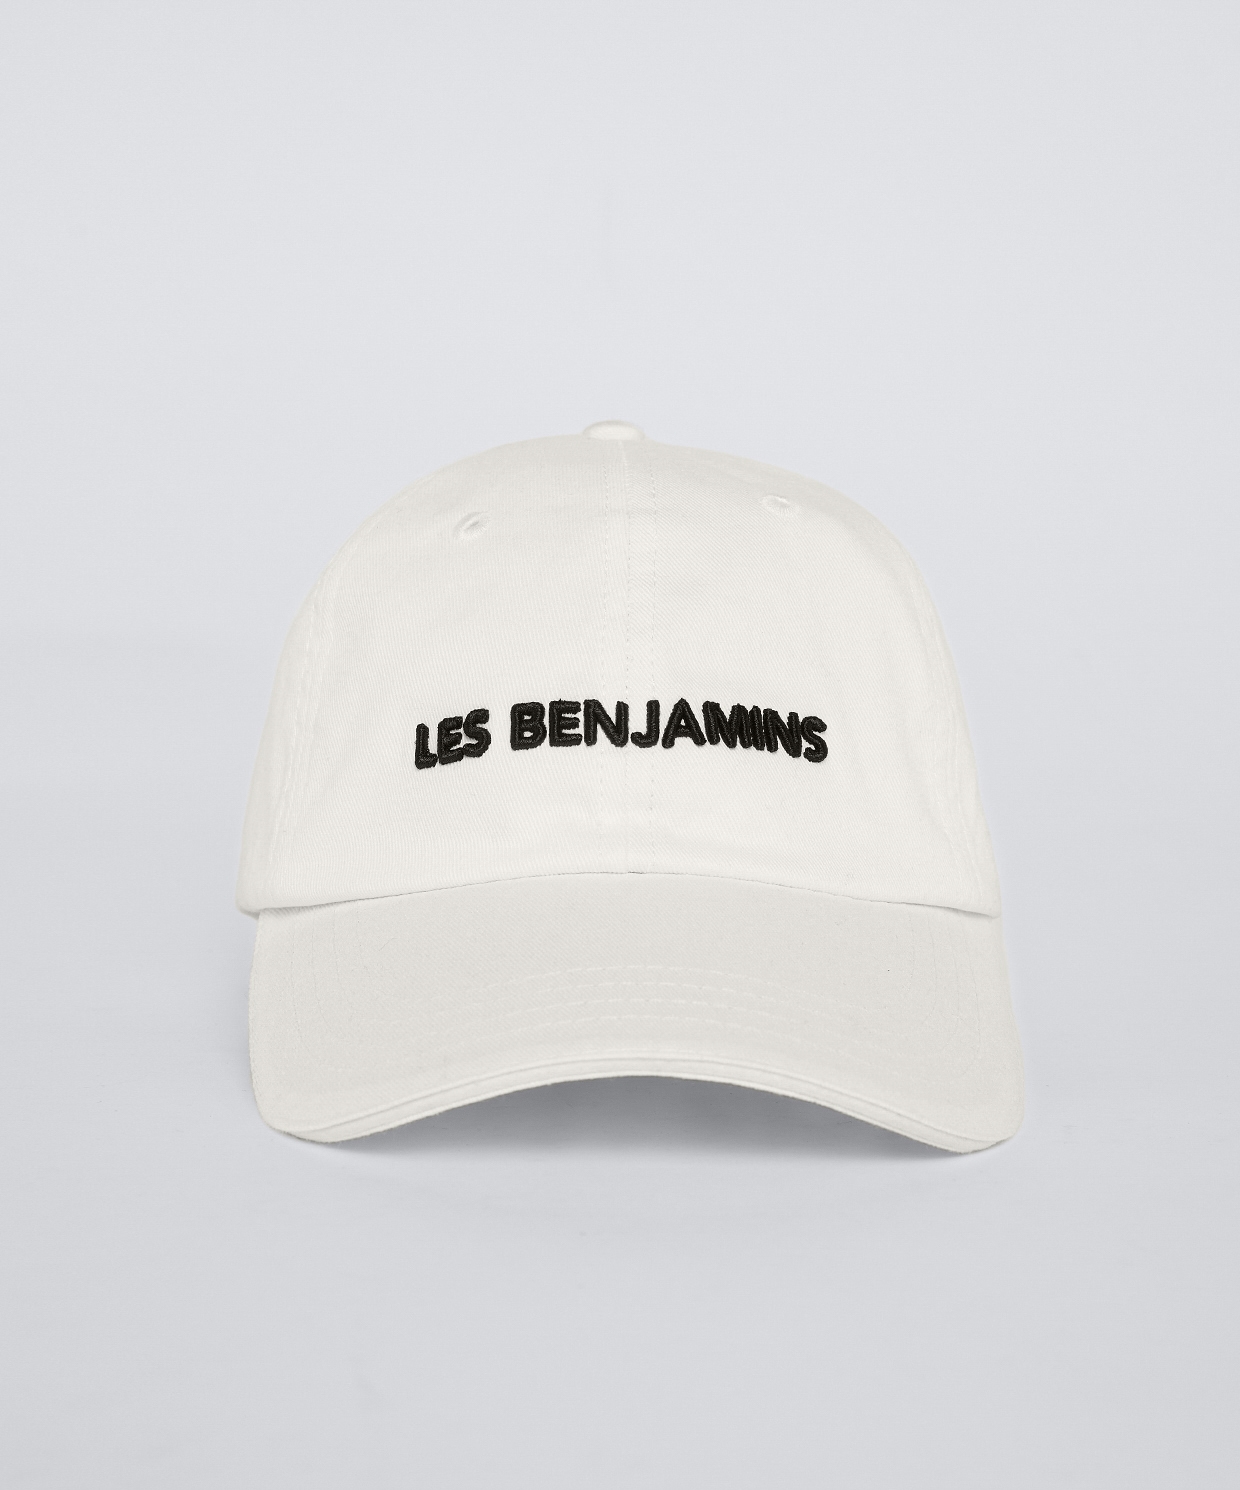 resm Les Benjamins Caps 308